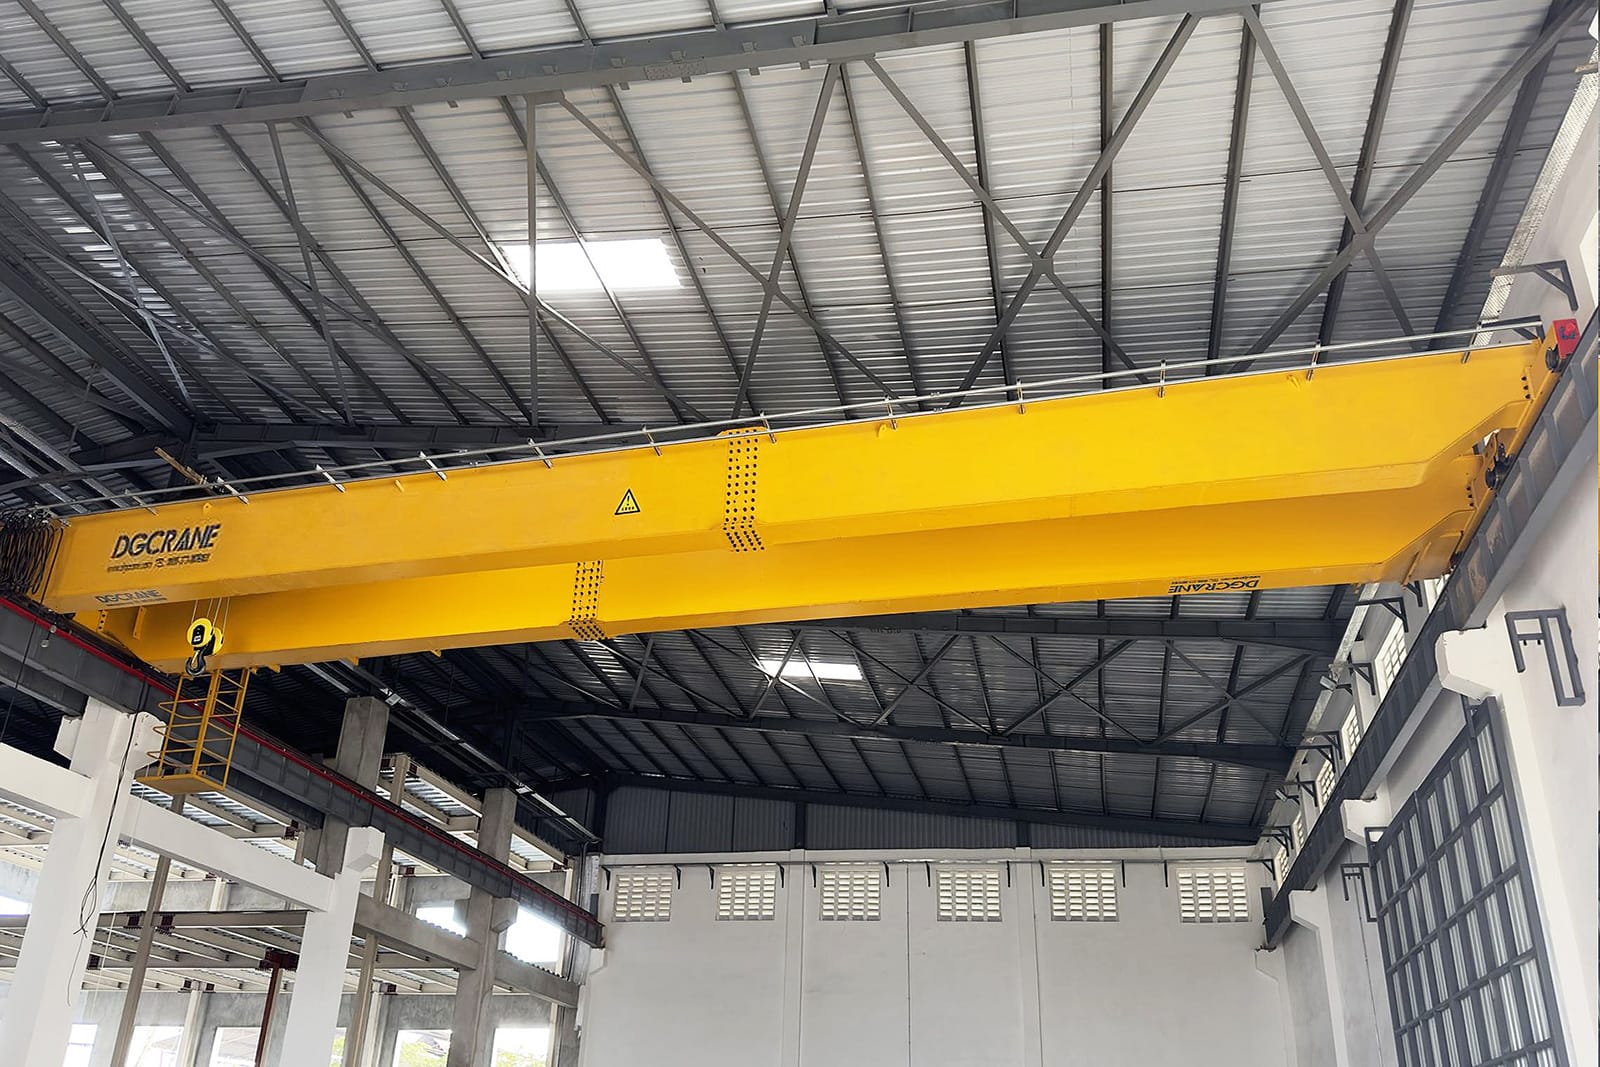 Een levendig gele dubbelligger-bovenloopkraan van het NLH-type met het merk DGCRANE, gemonteerd in een goed verlichte industriële omgeving met een dak van metalen platen en hoge ramen